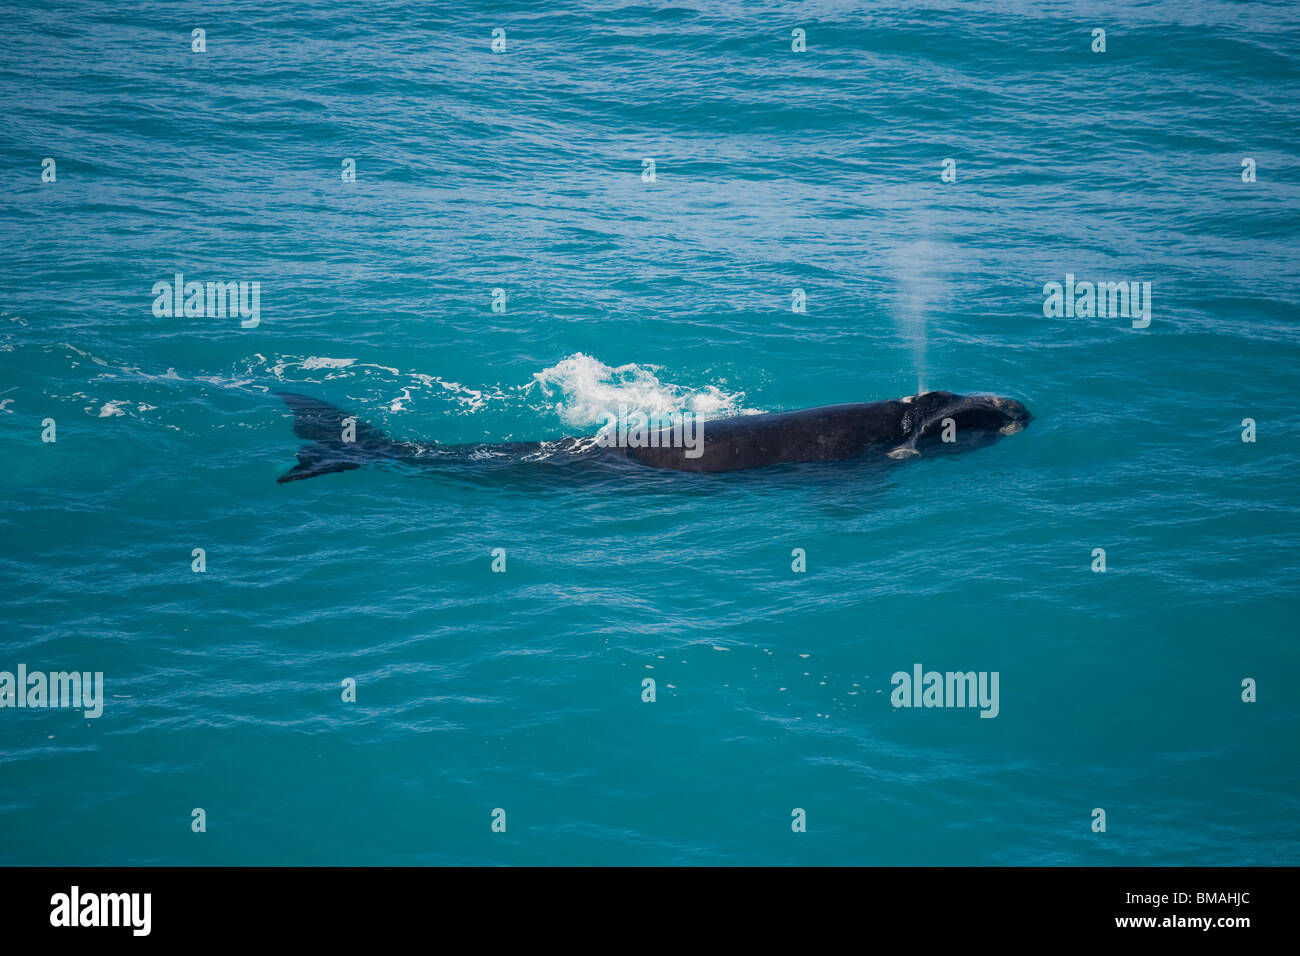 Baleine franche australe de Nullarbor plain sud de l'Australie Banque D'Images